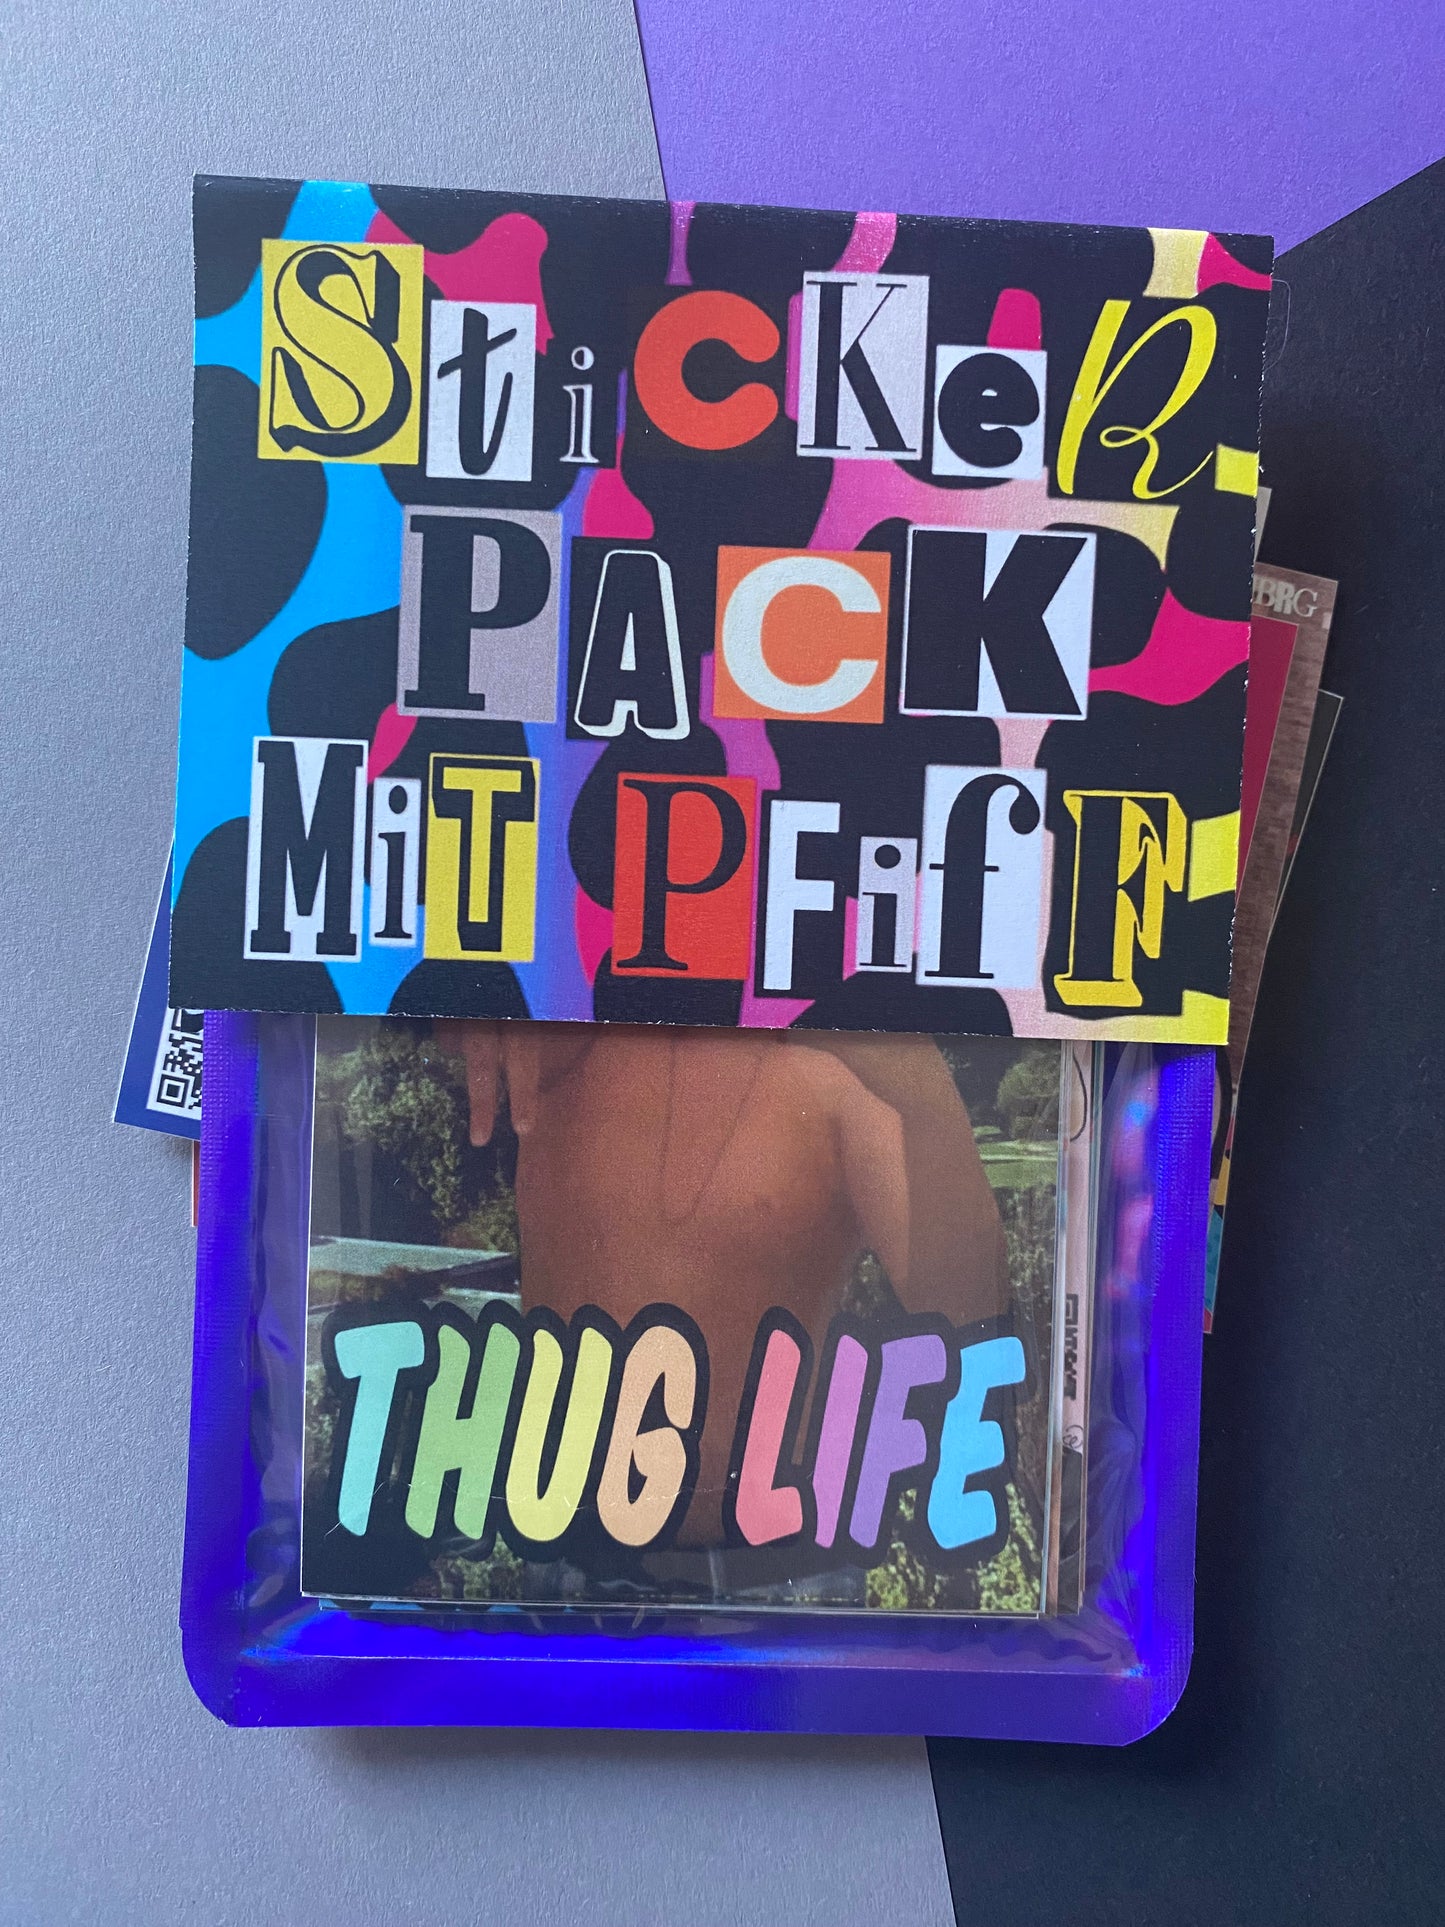 Sticker Pack mit Pfiff